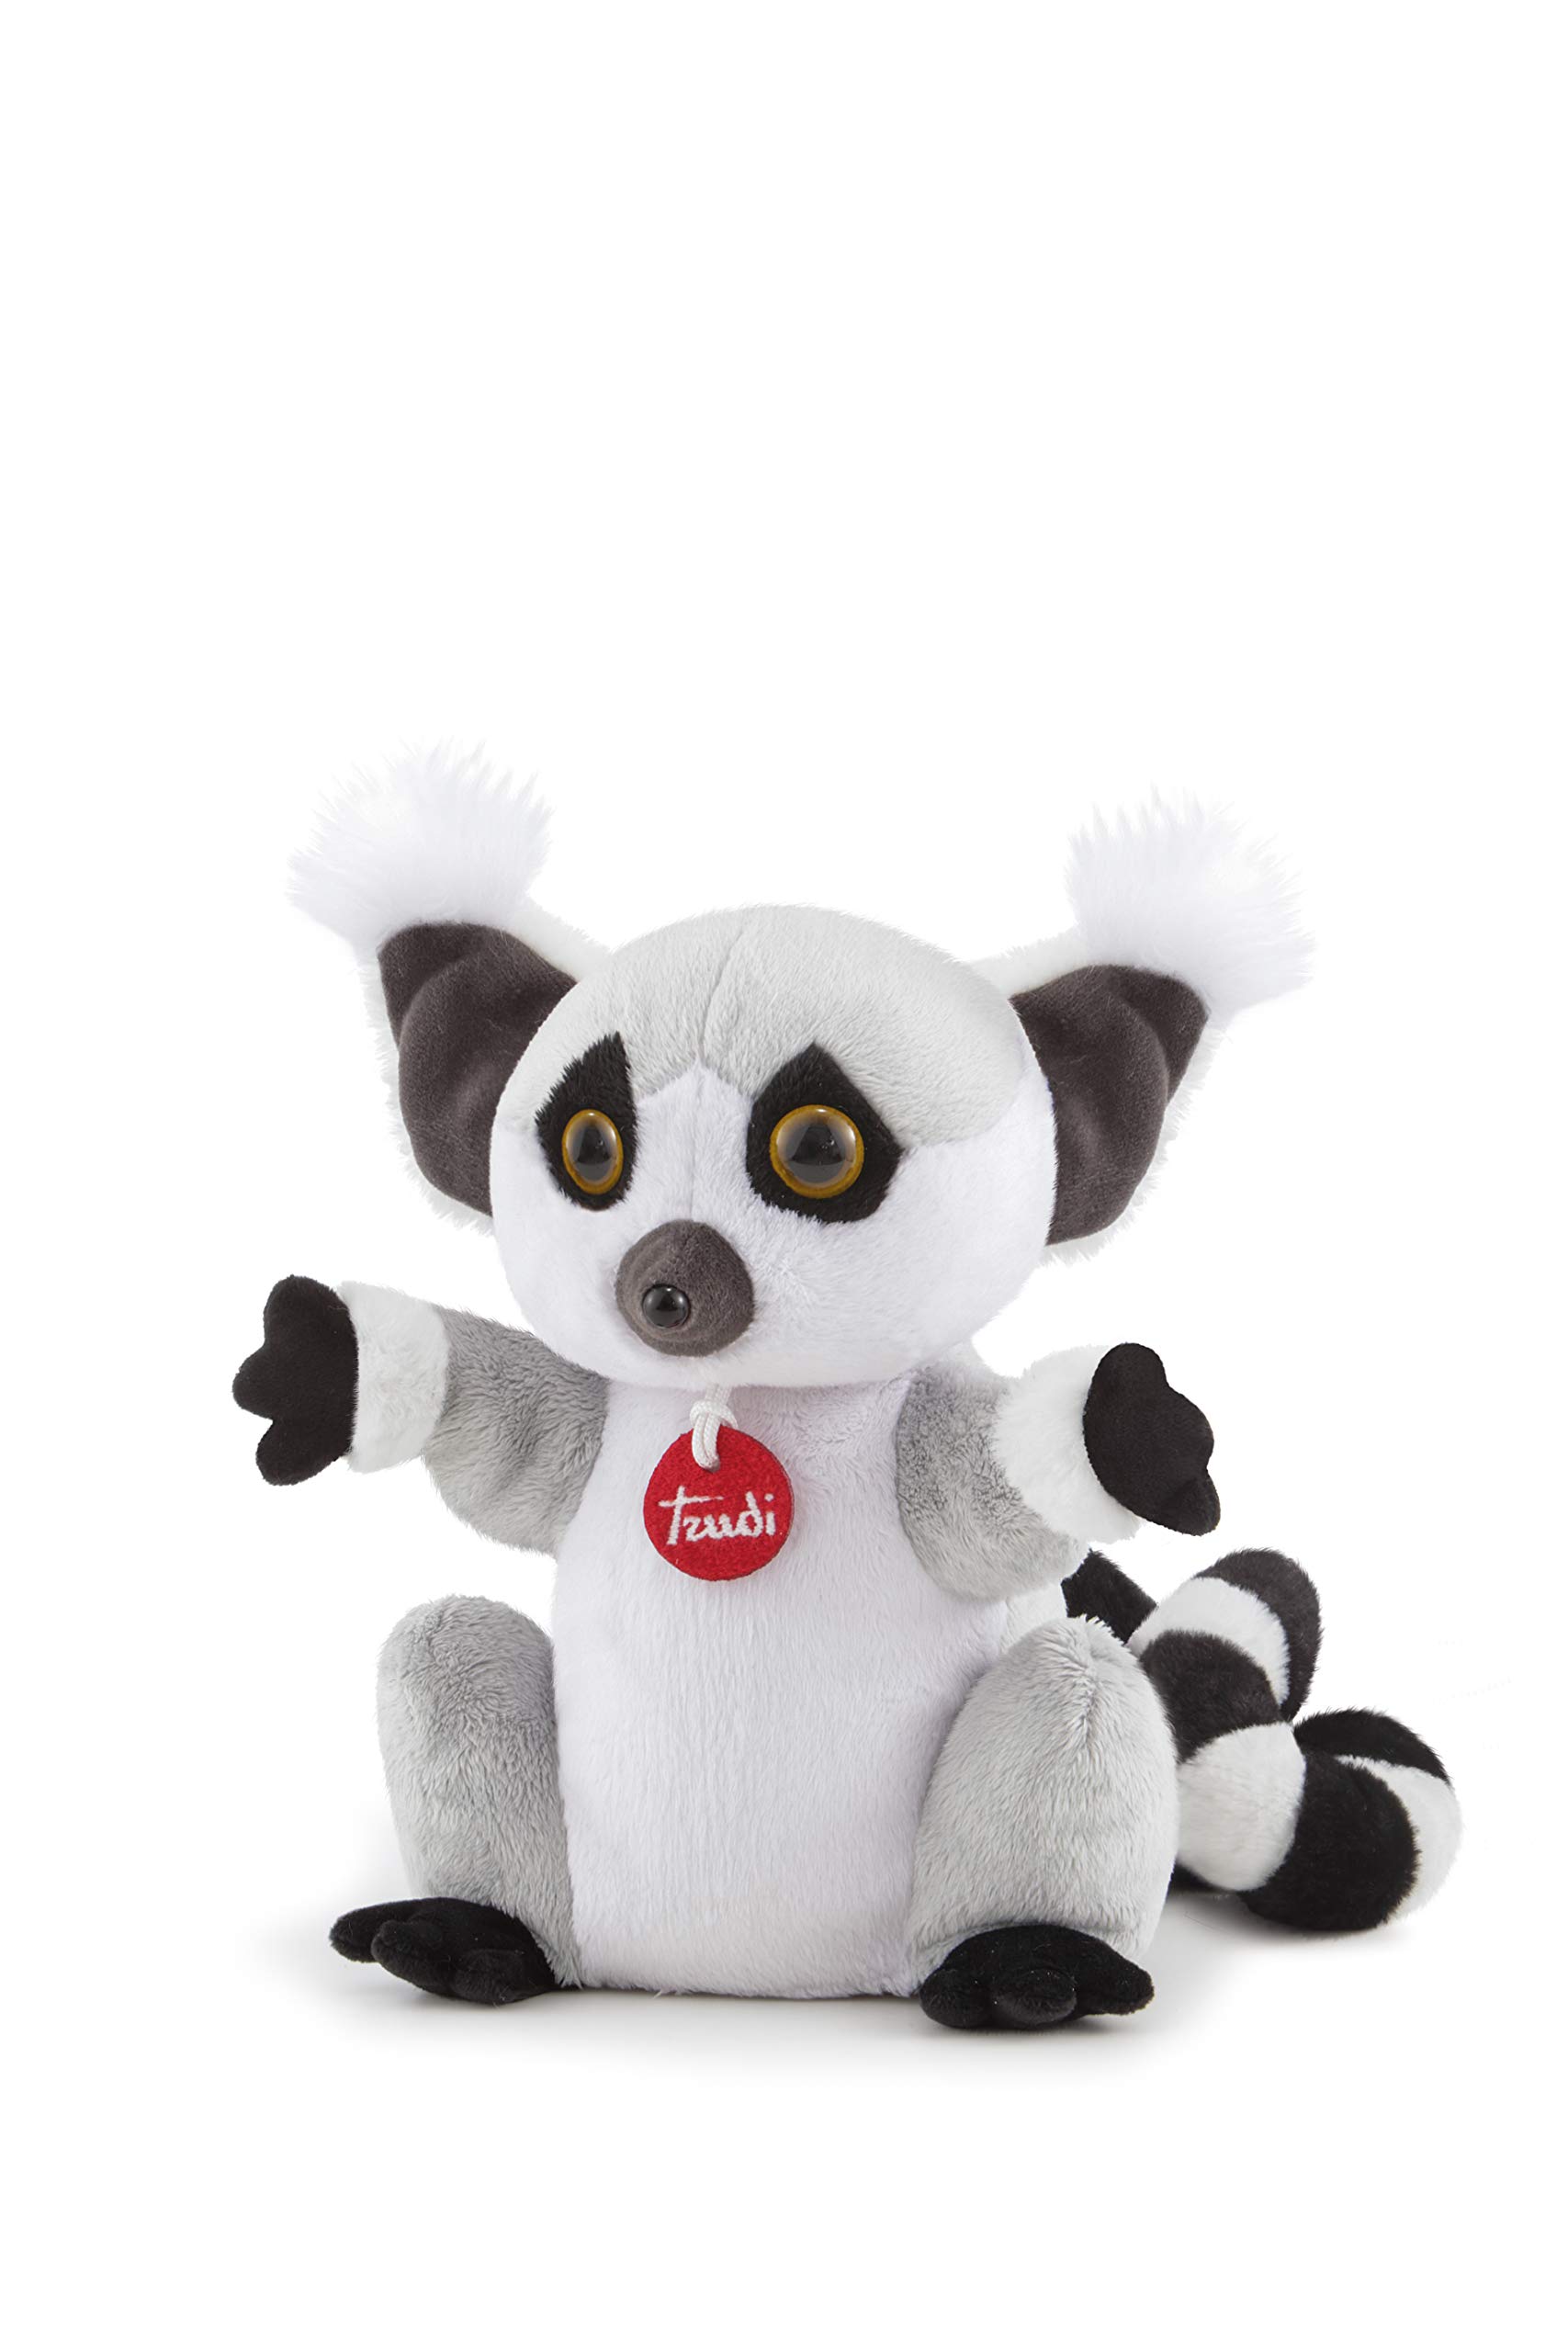 Trudi 29820 - Handpuppe Lemur cm 17x24x23, grau/weiß